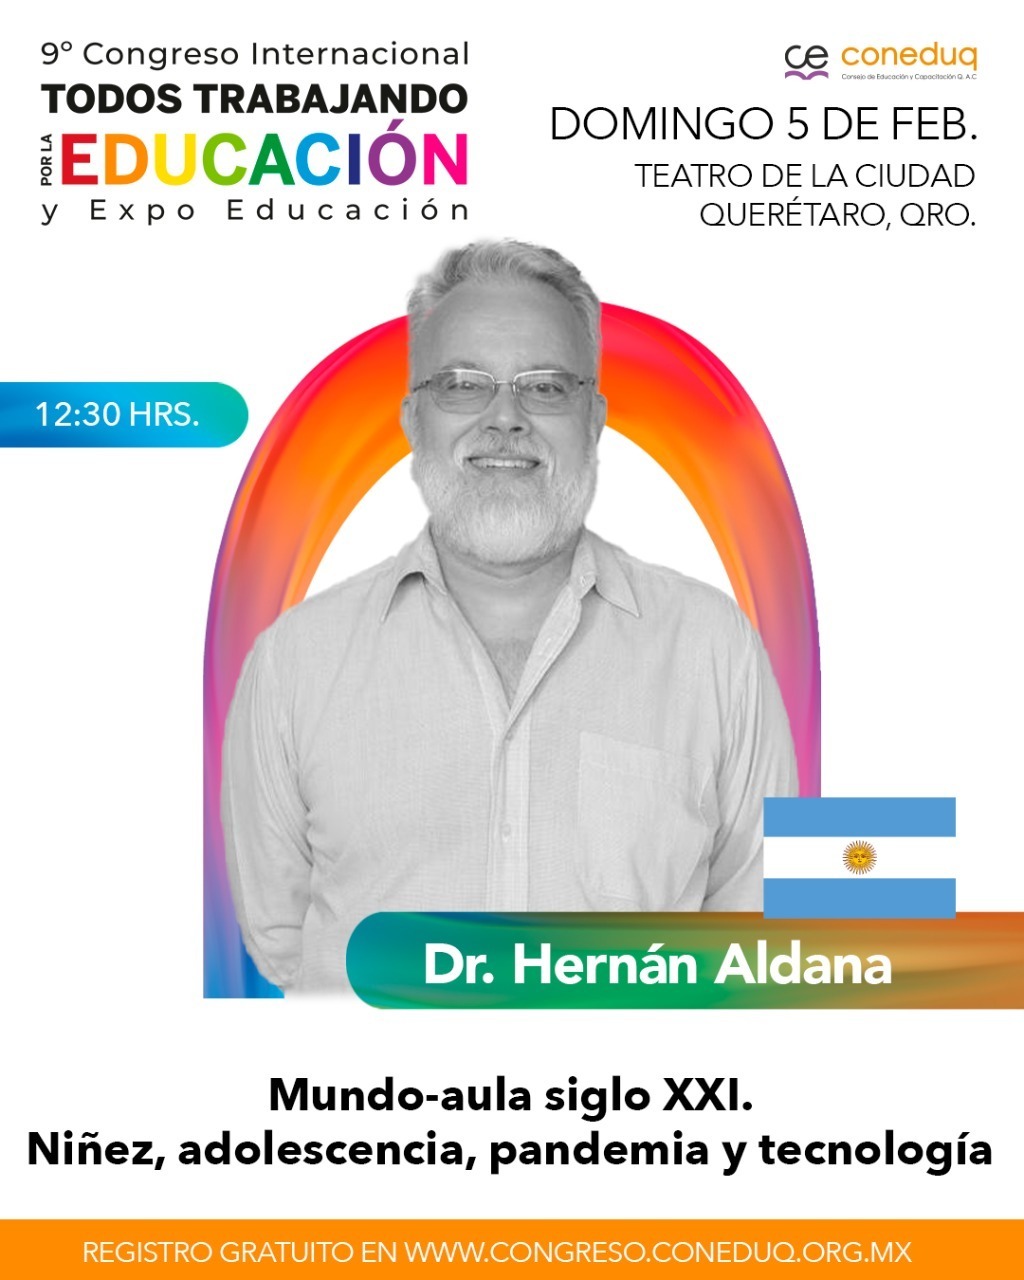 Dr. Hernán Aldana